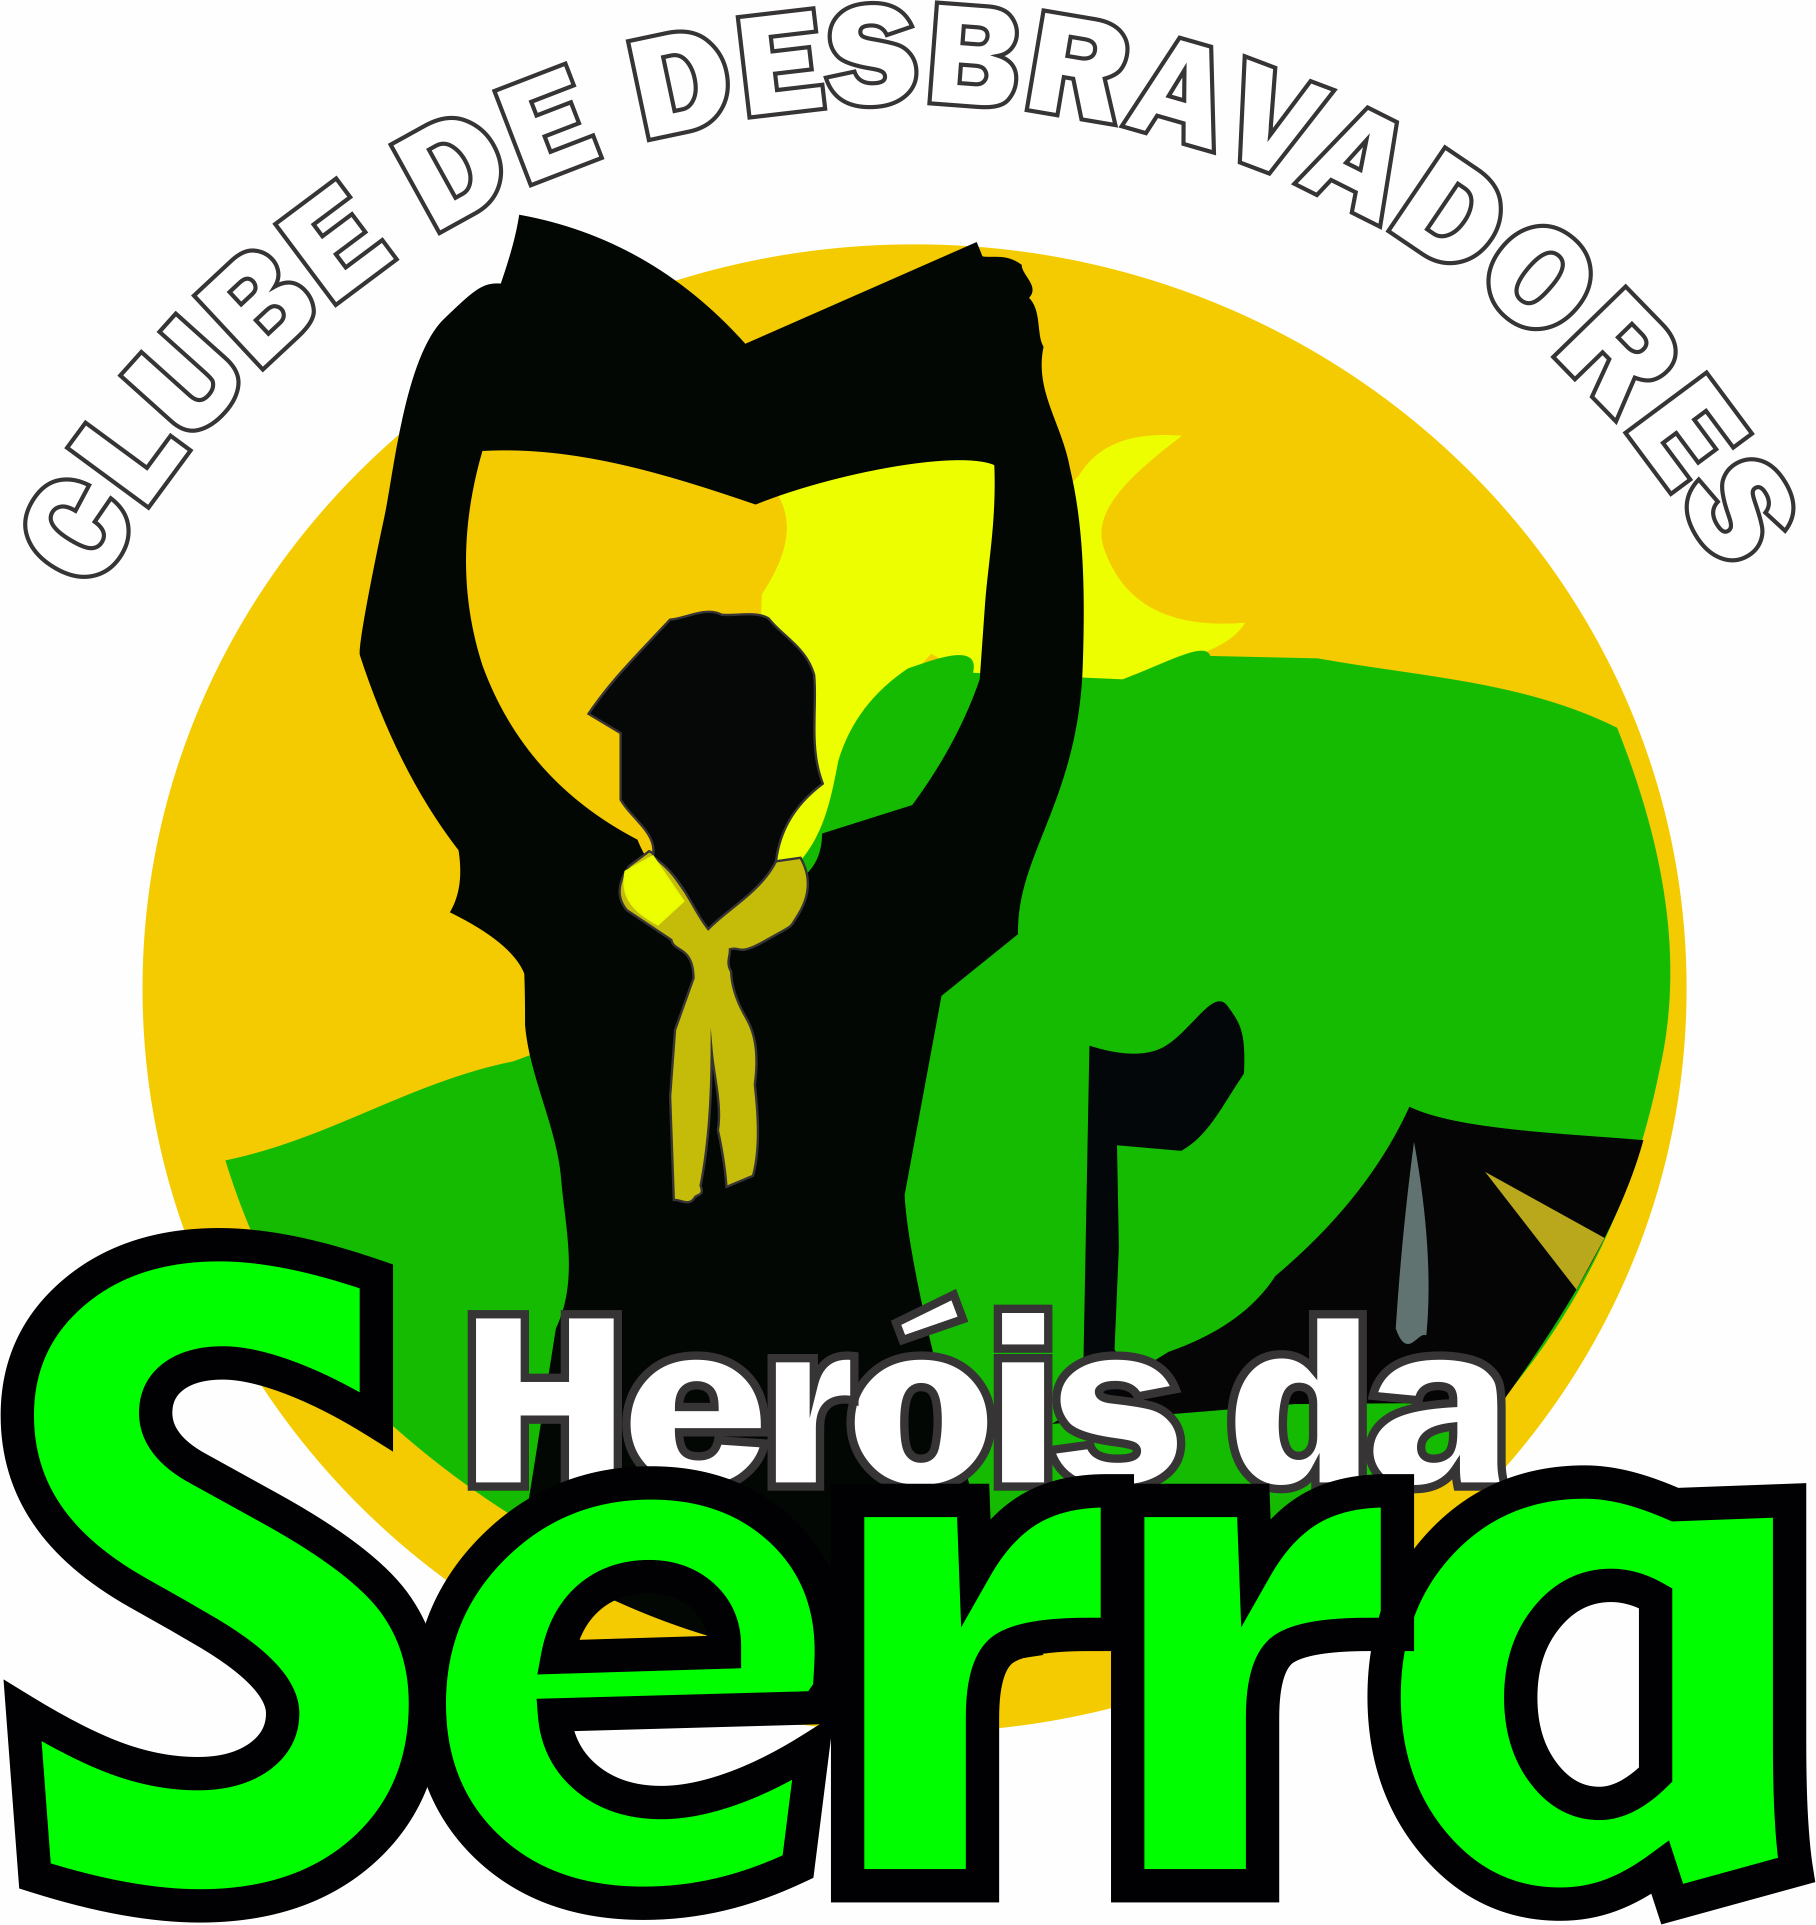 Heróis da Serra